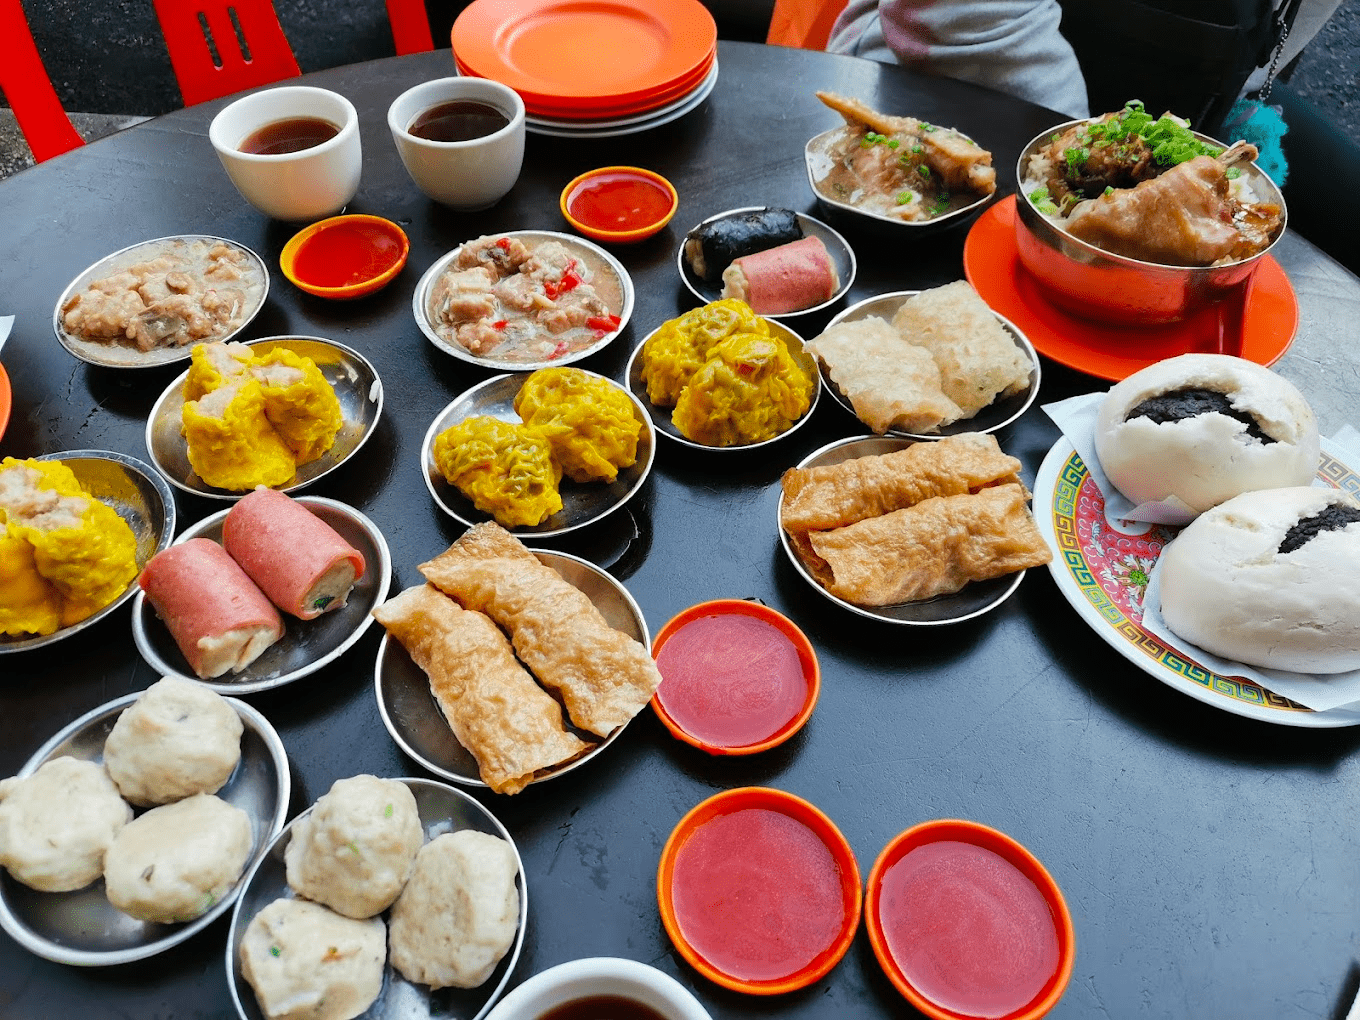 cheap eats at restaurants in kl - restoran tuck cheong